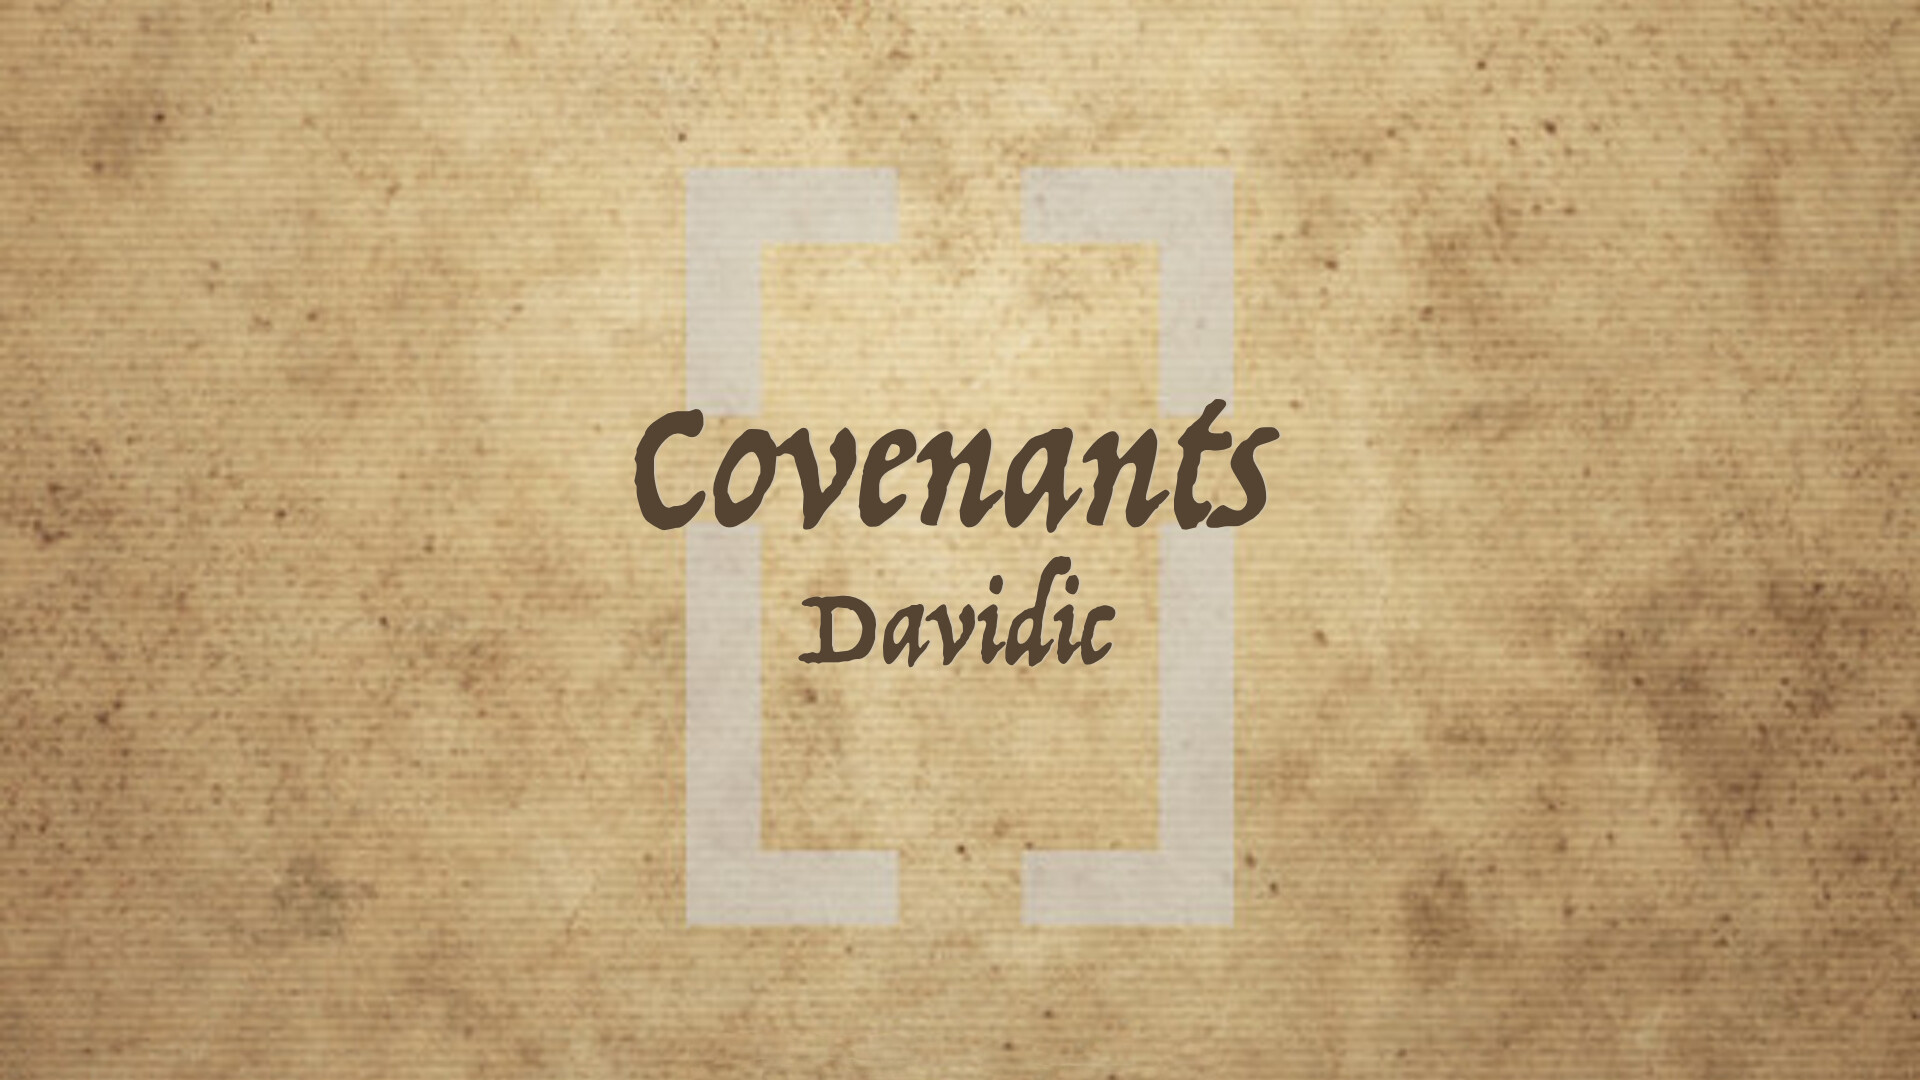 Davidic Covenant